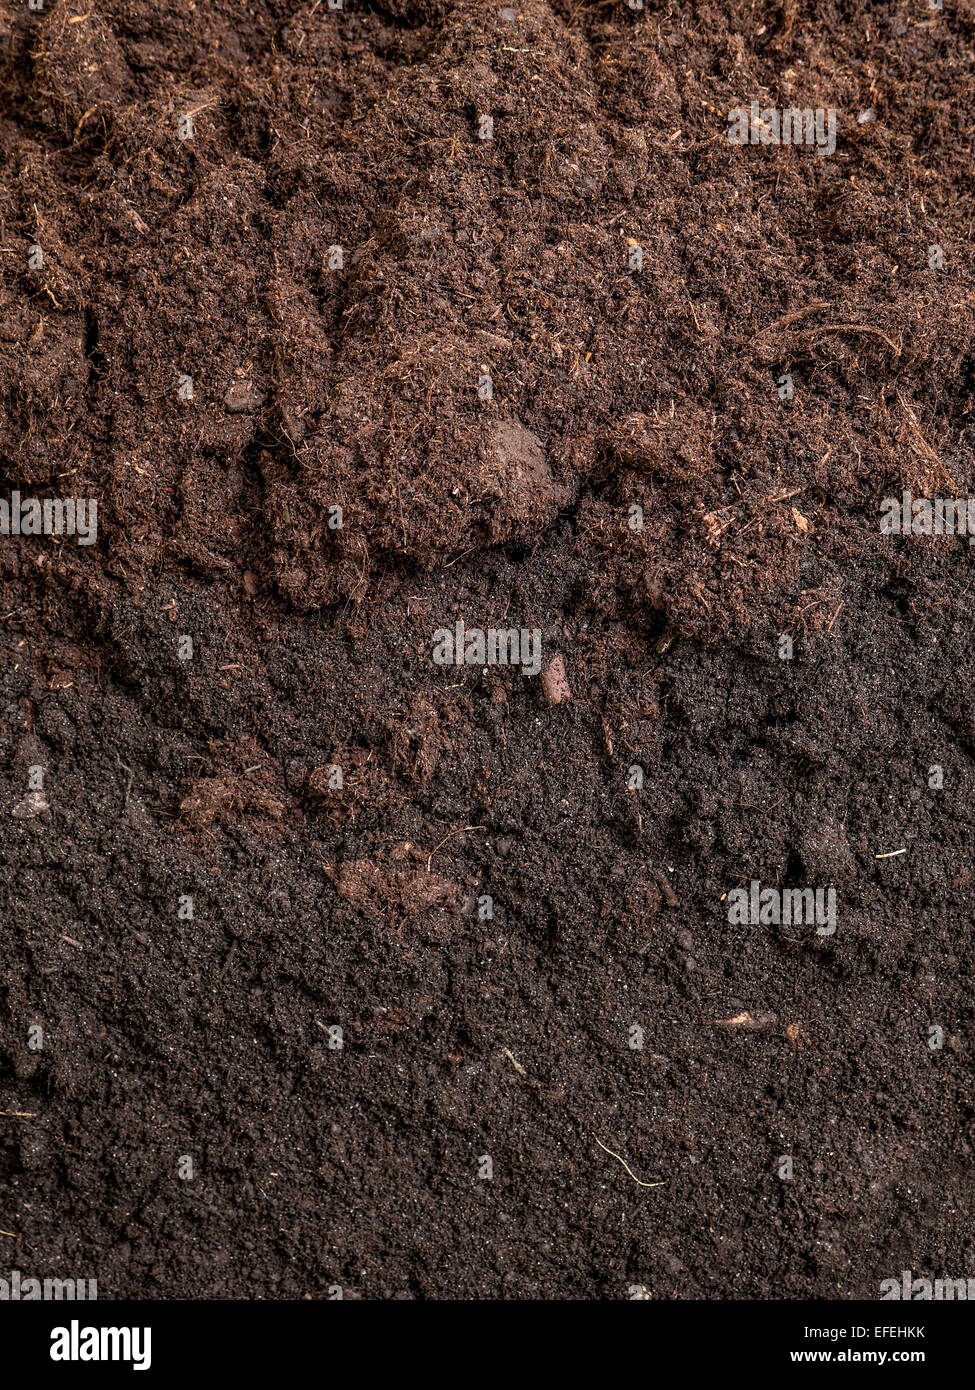 Cross-section of garden soil Stock Photo